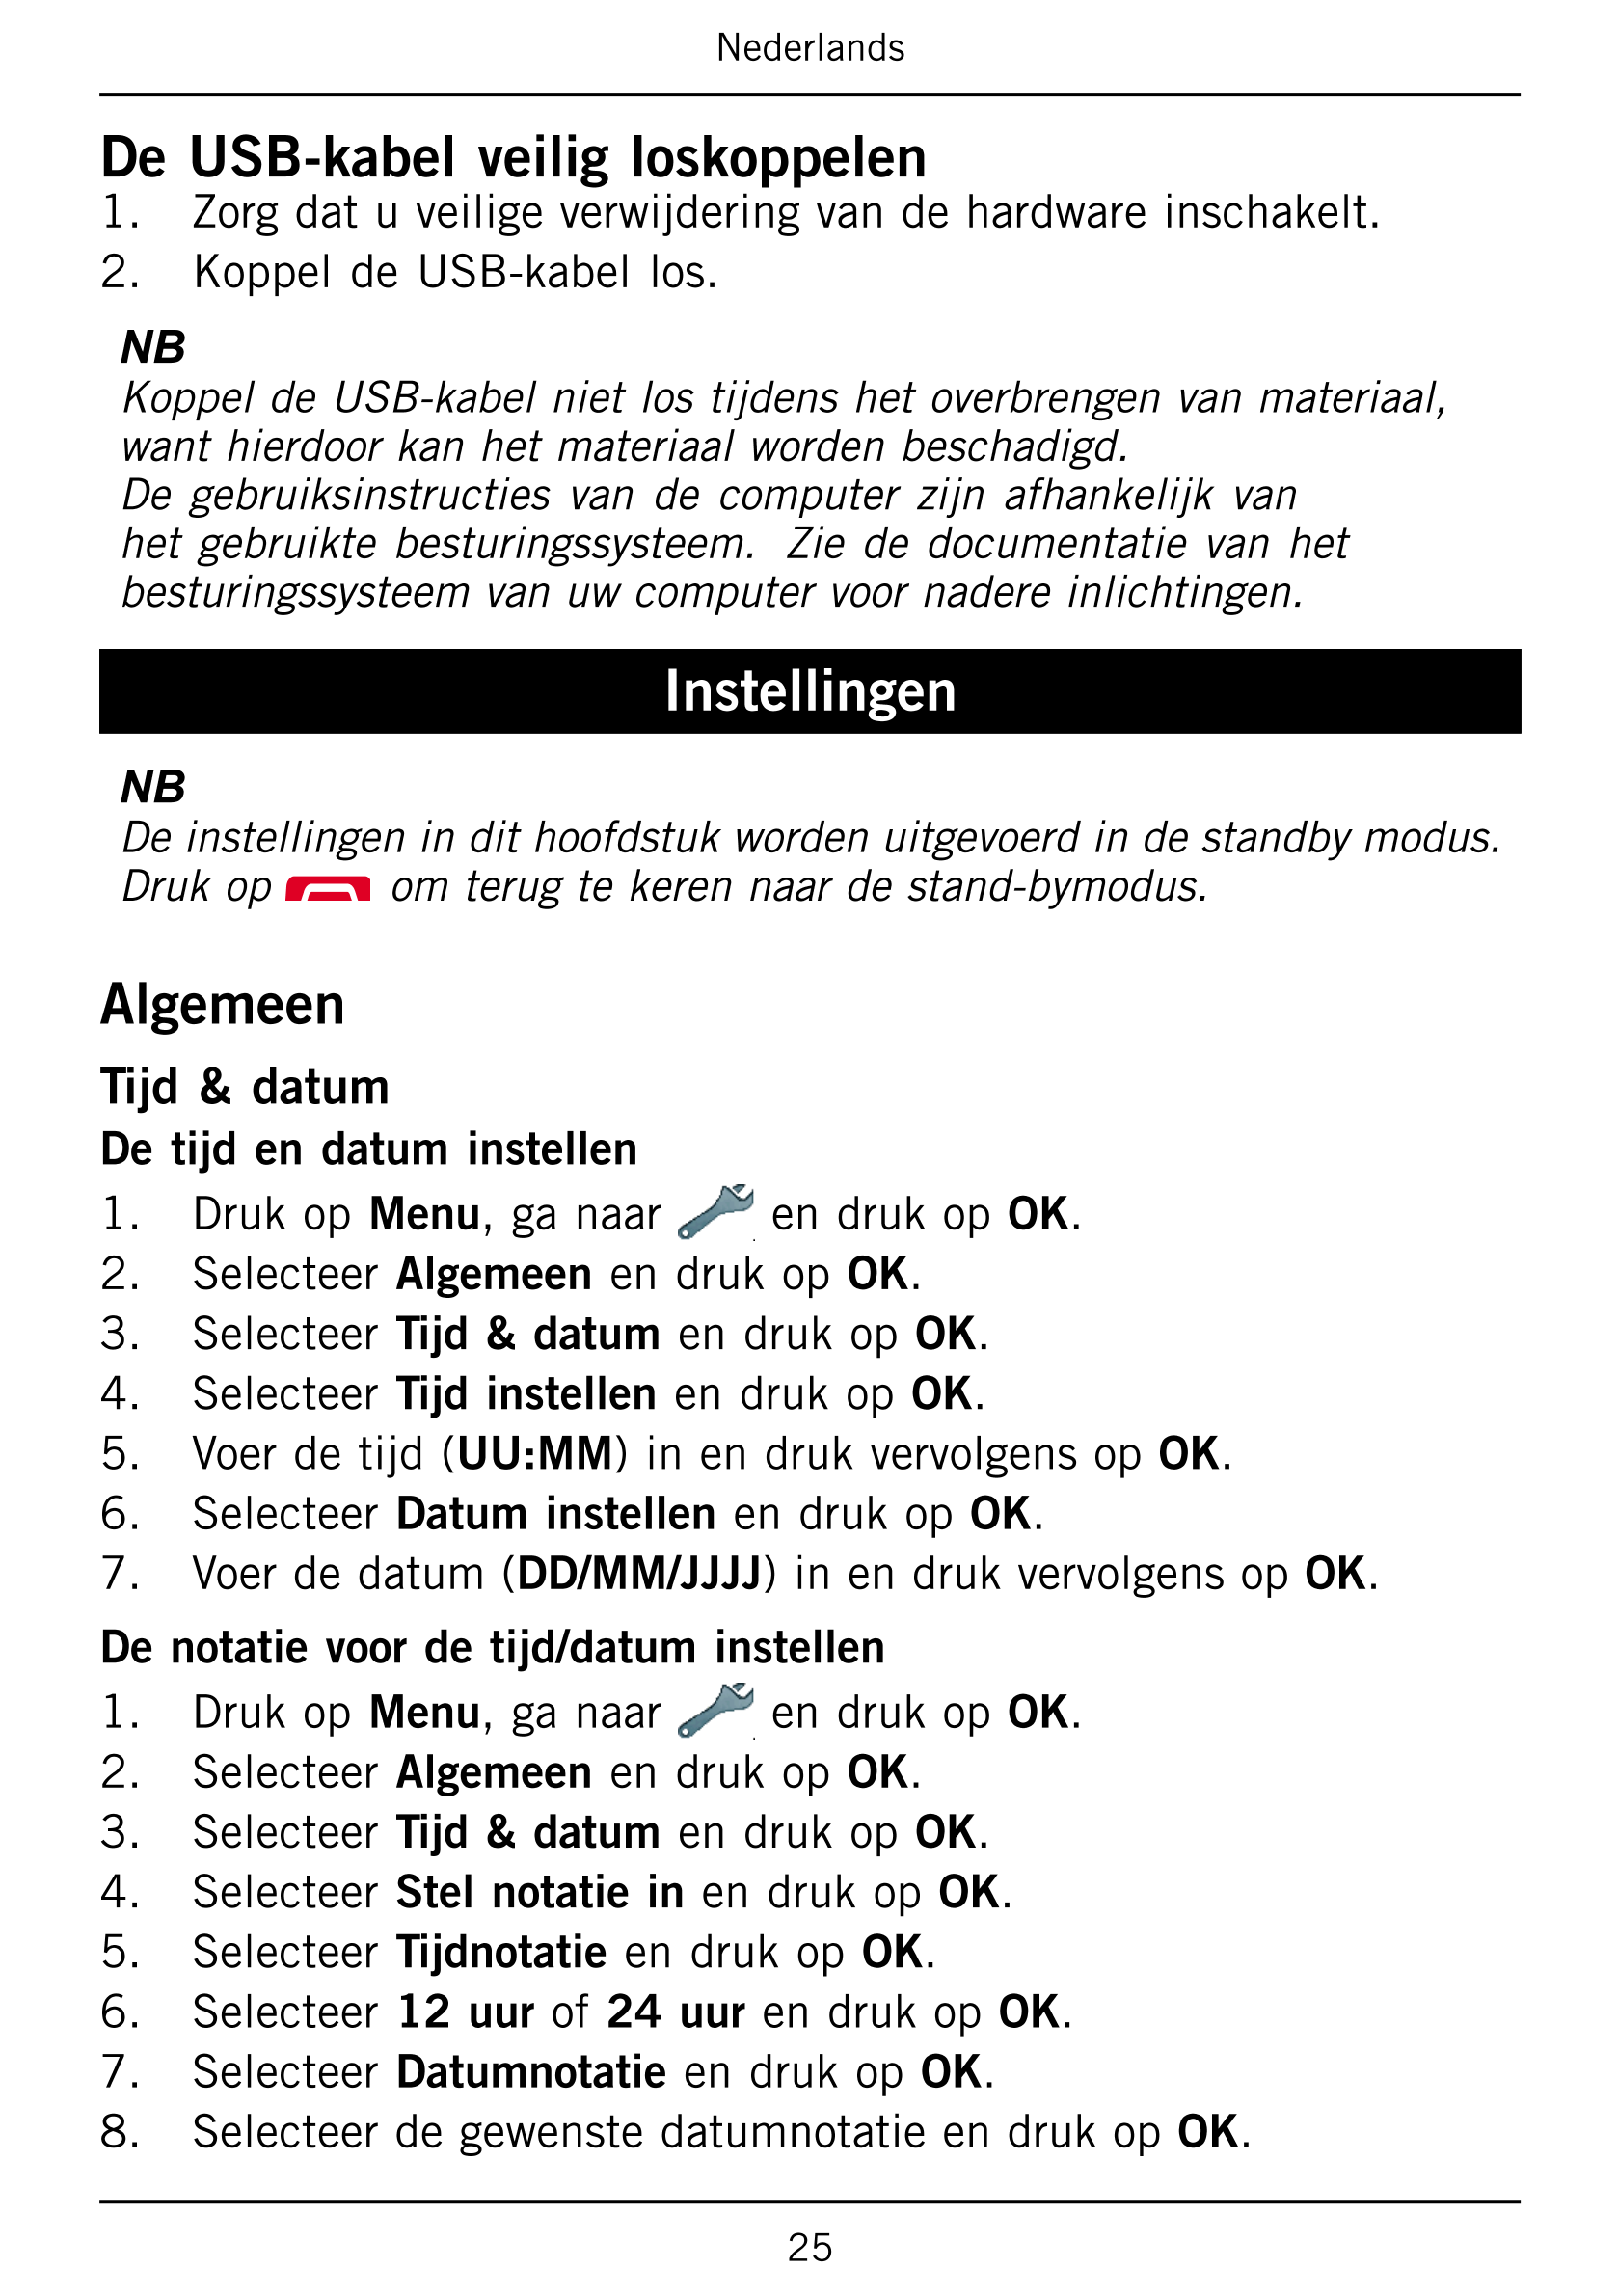 Nederlands
De USB-kabel veilig loskoppelen
1.     Zorg dat u veilige verwijdering van de hardware inschakelt.
2.     Koppel de U